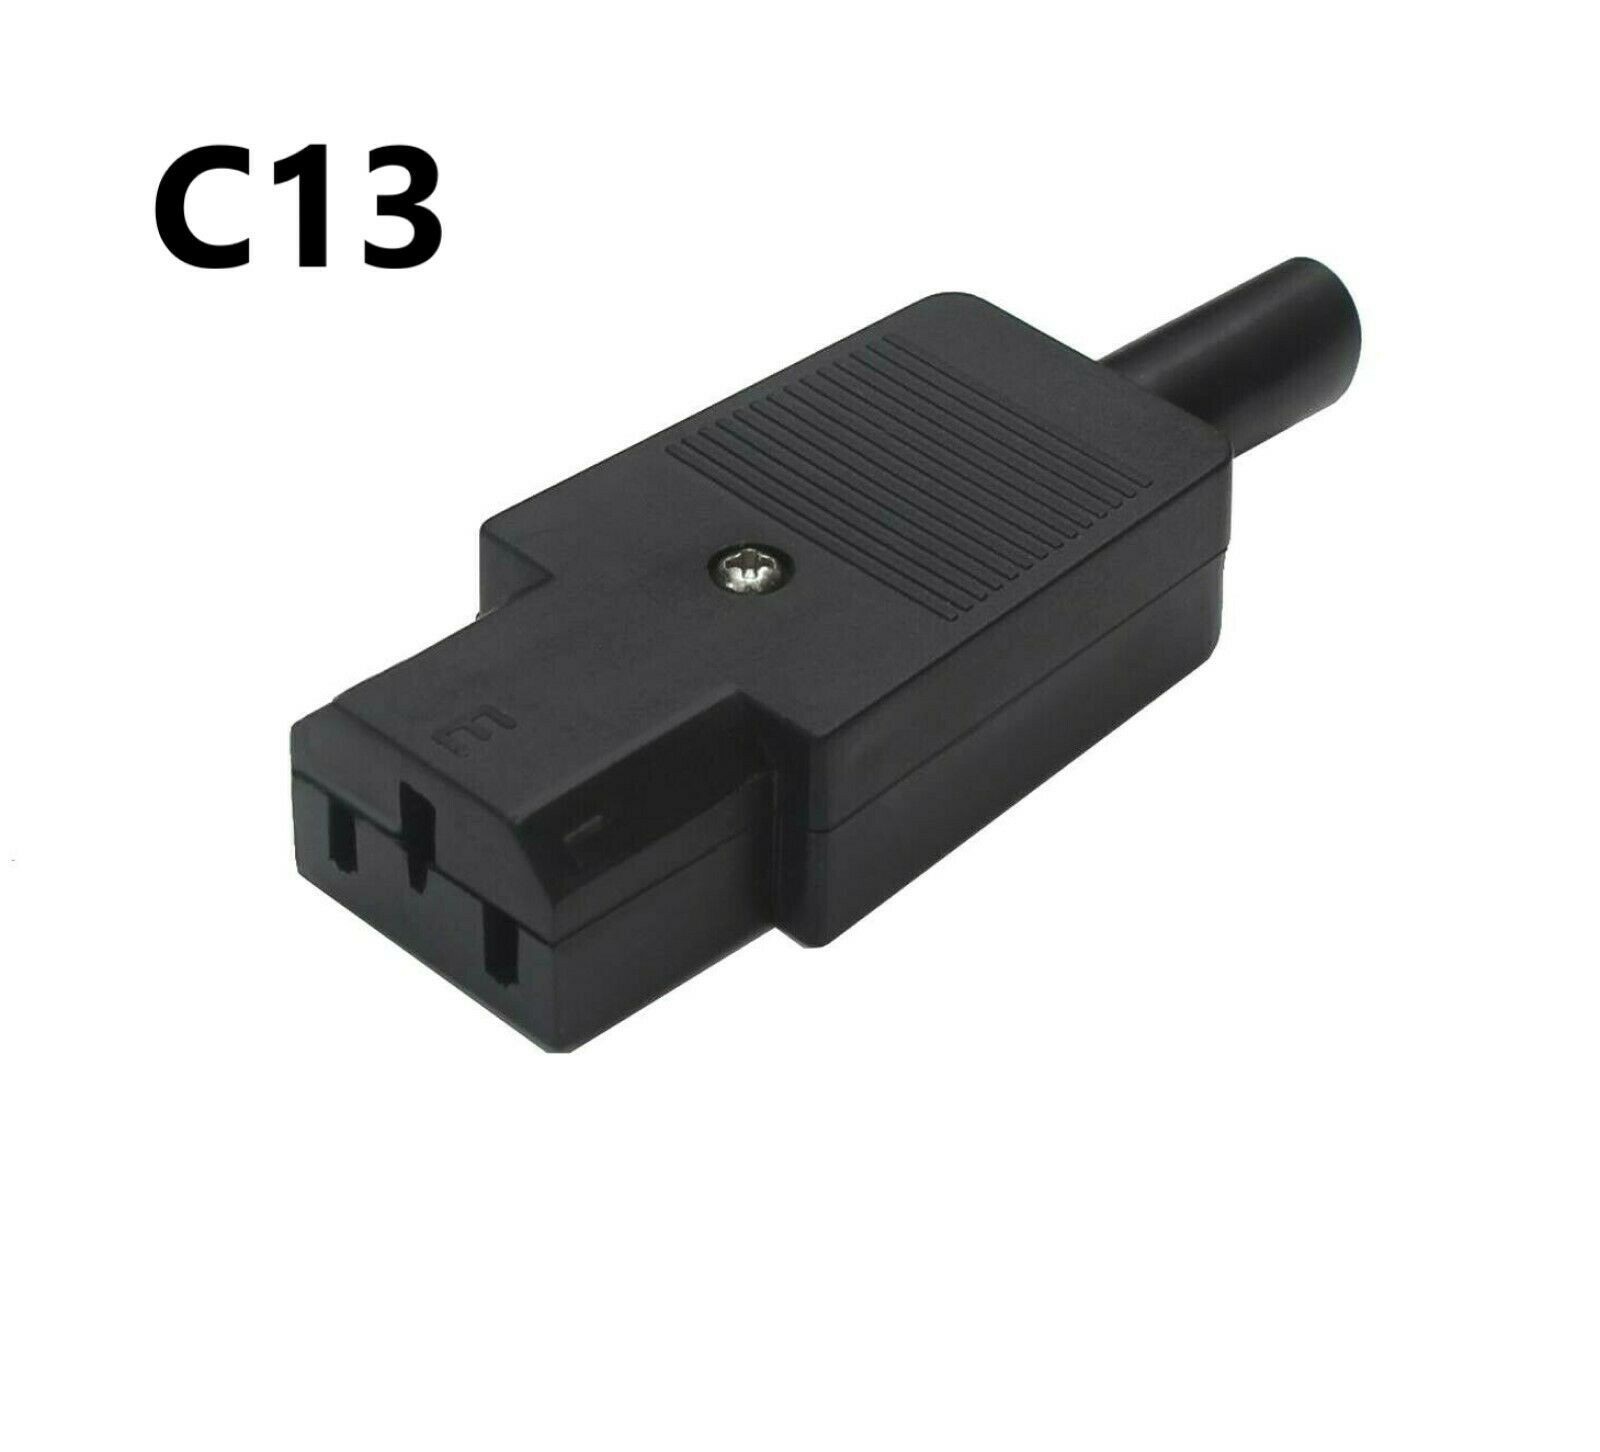 Konektor C13 samice / C14 samec 250V 10A Model: C13 - samice